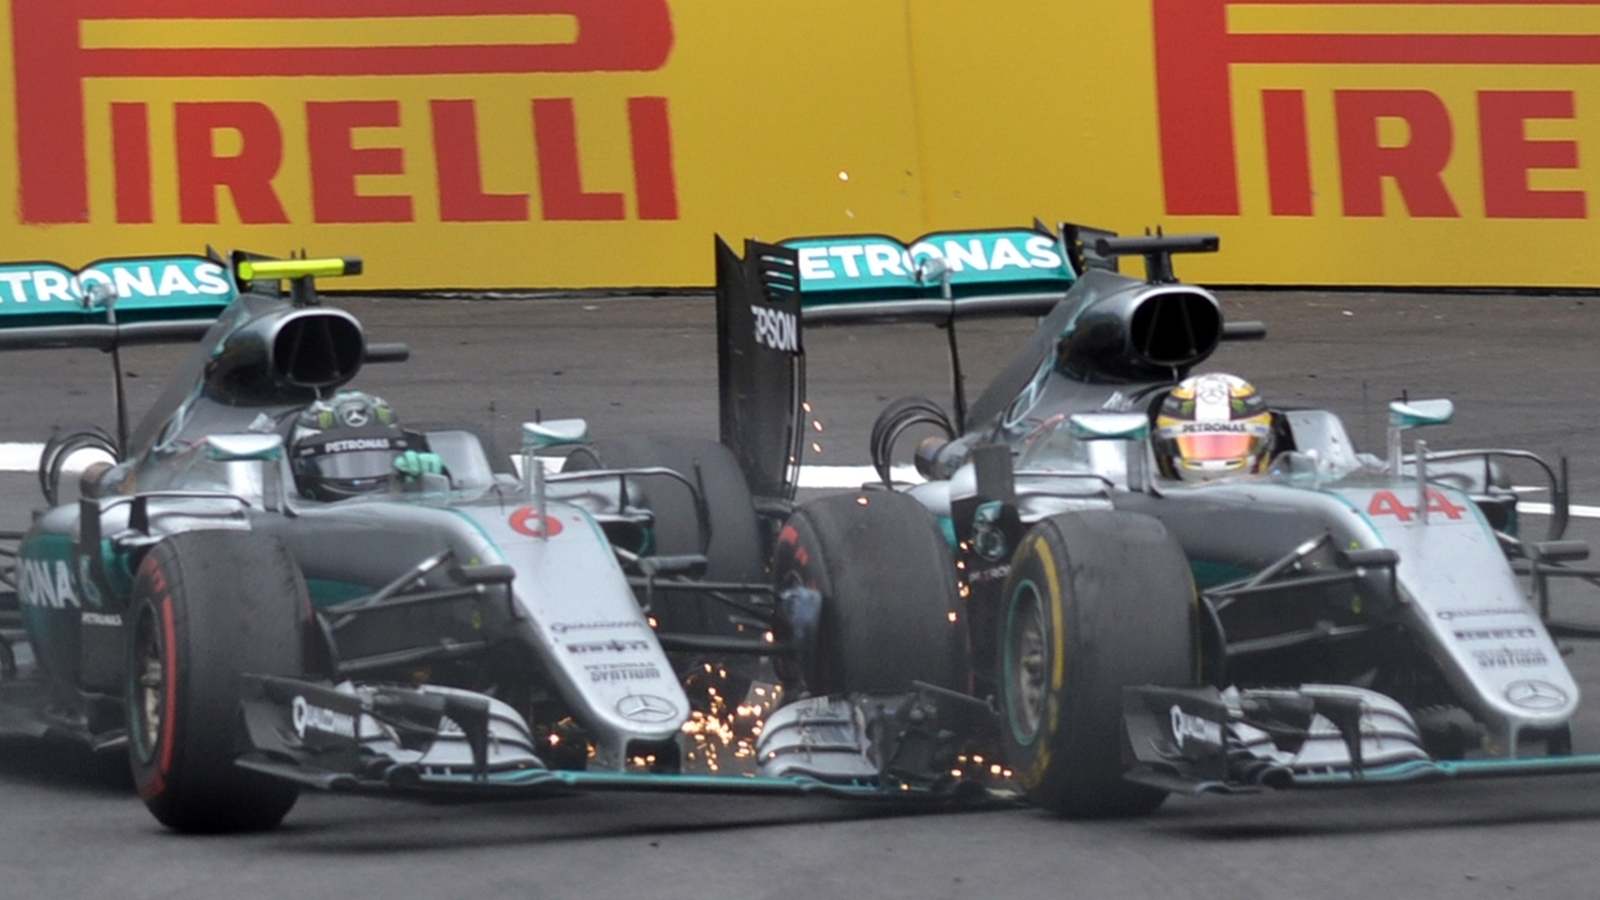 O último encontro na pista aconteceu na Áustria, também em 2016. Rosberg tentou impedir a ultrapassagem de Hamilton, mas sem sucesso. Além de ficar fora do pódio, o alemão viu o rival vencer